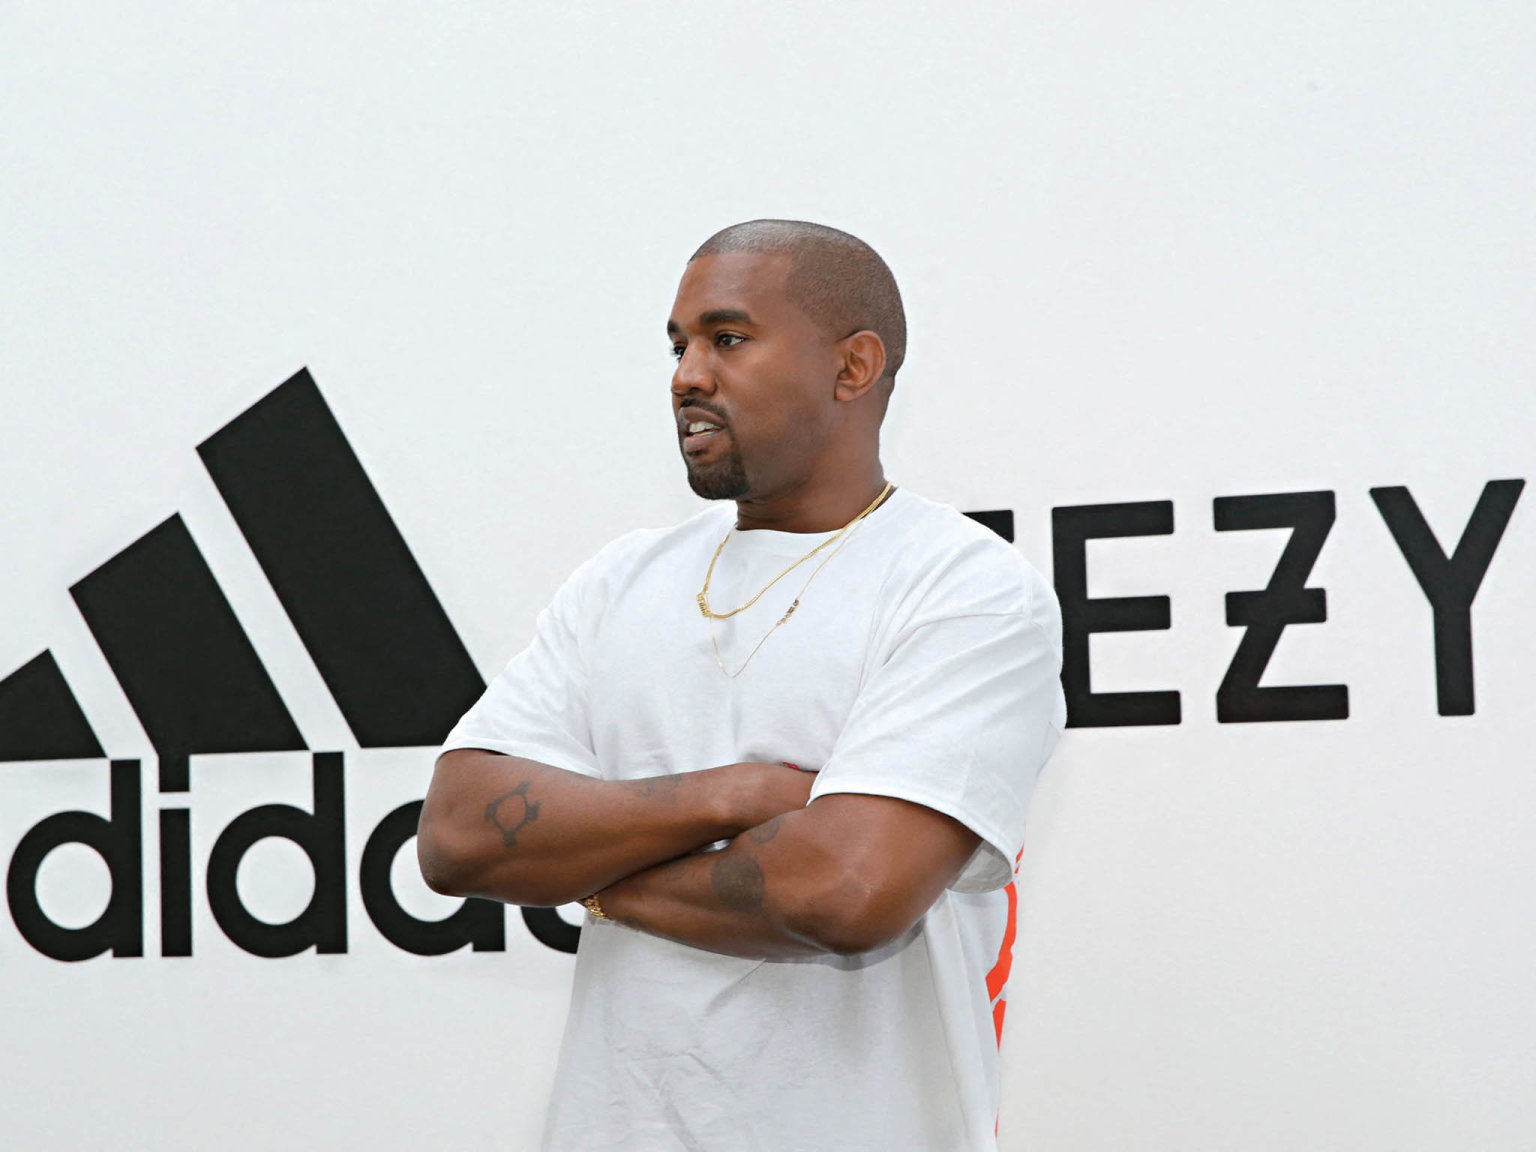 Adidas a další firmy ukonèily spolupráci s raperem Kanyem Westem kvùli jeho nenávistným poznámkám.